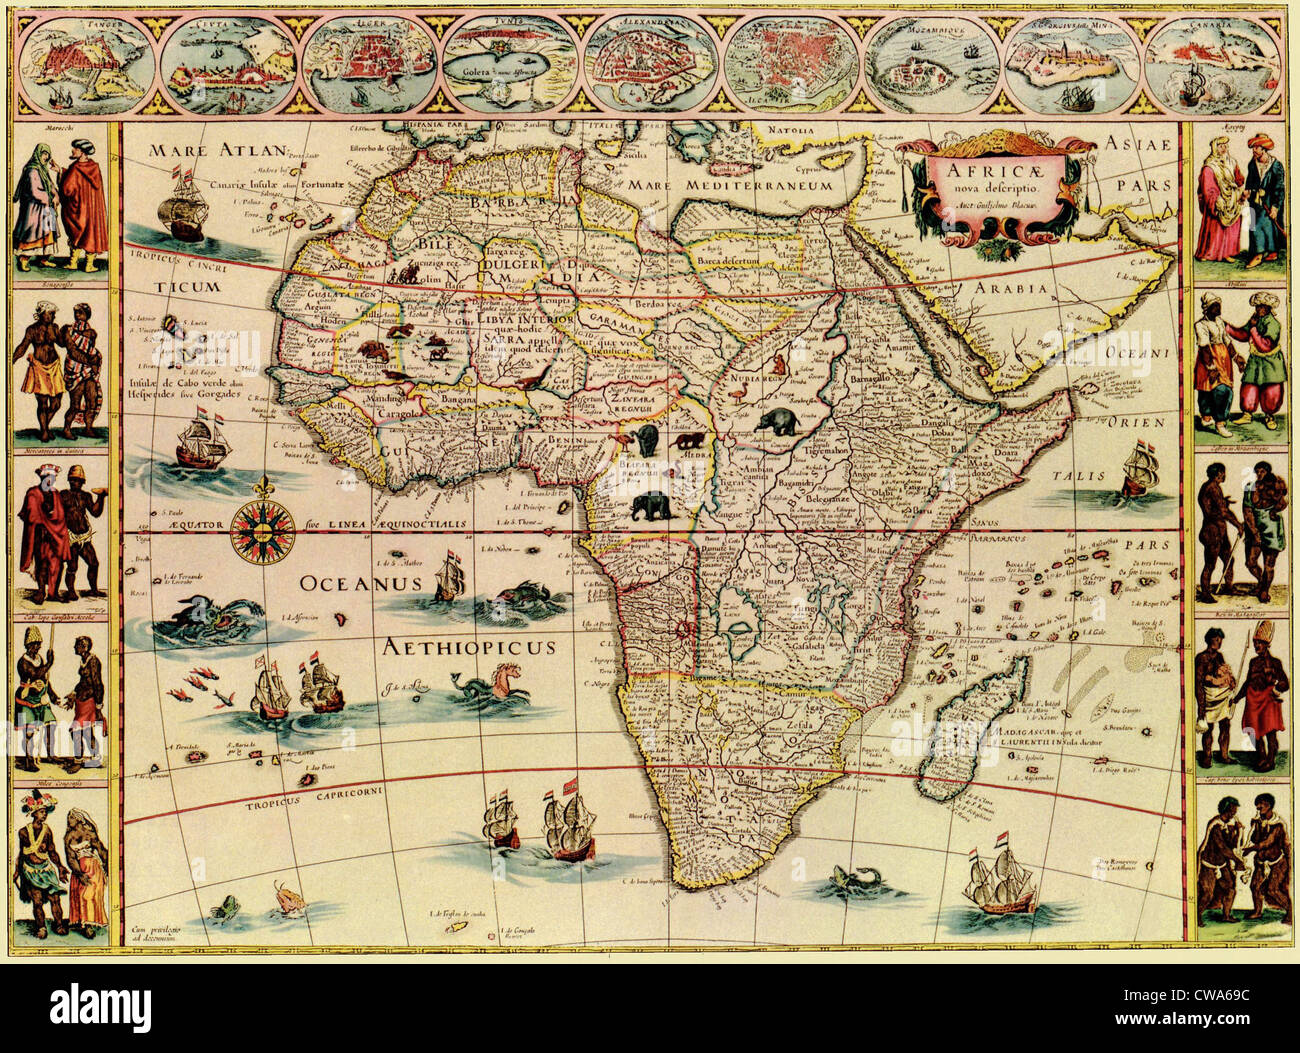 Mappa di Africa da 1699s. Bordo superiore mostra città africane e bordi laterali mostrano gli uomini e le donne dei popoli africani. Foto Stock